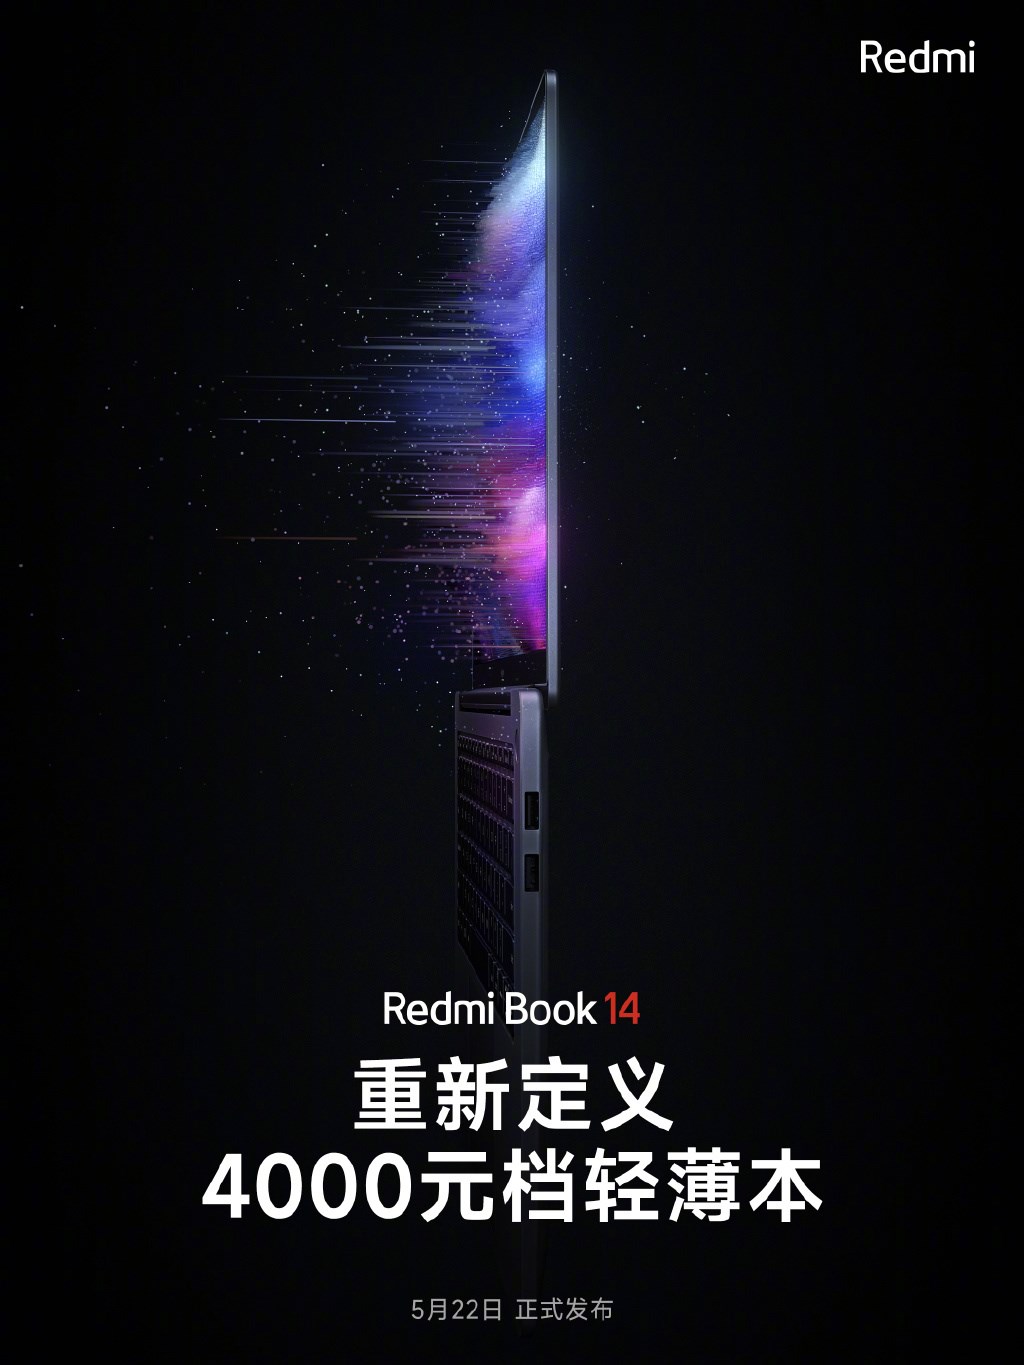 Yeni RedmiBook 14 için tarih verildi: 575 dolar fiyatla geliyor